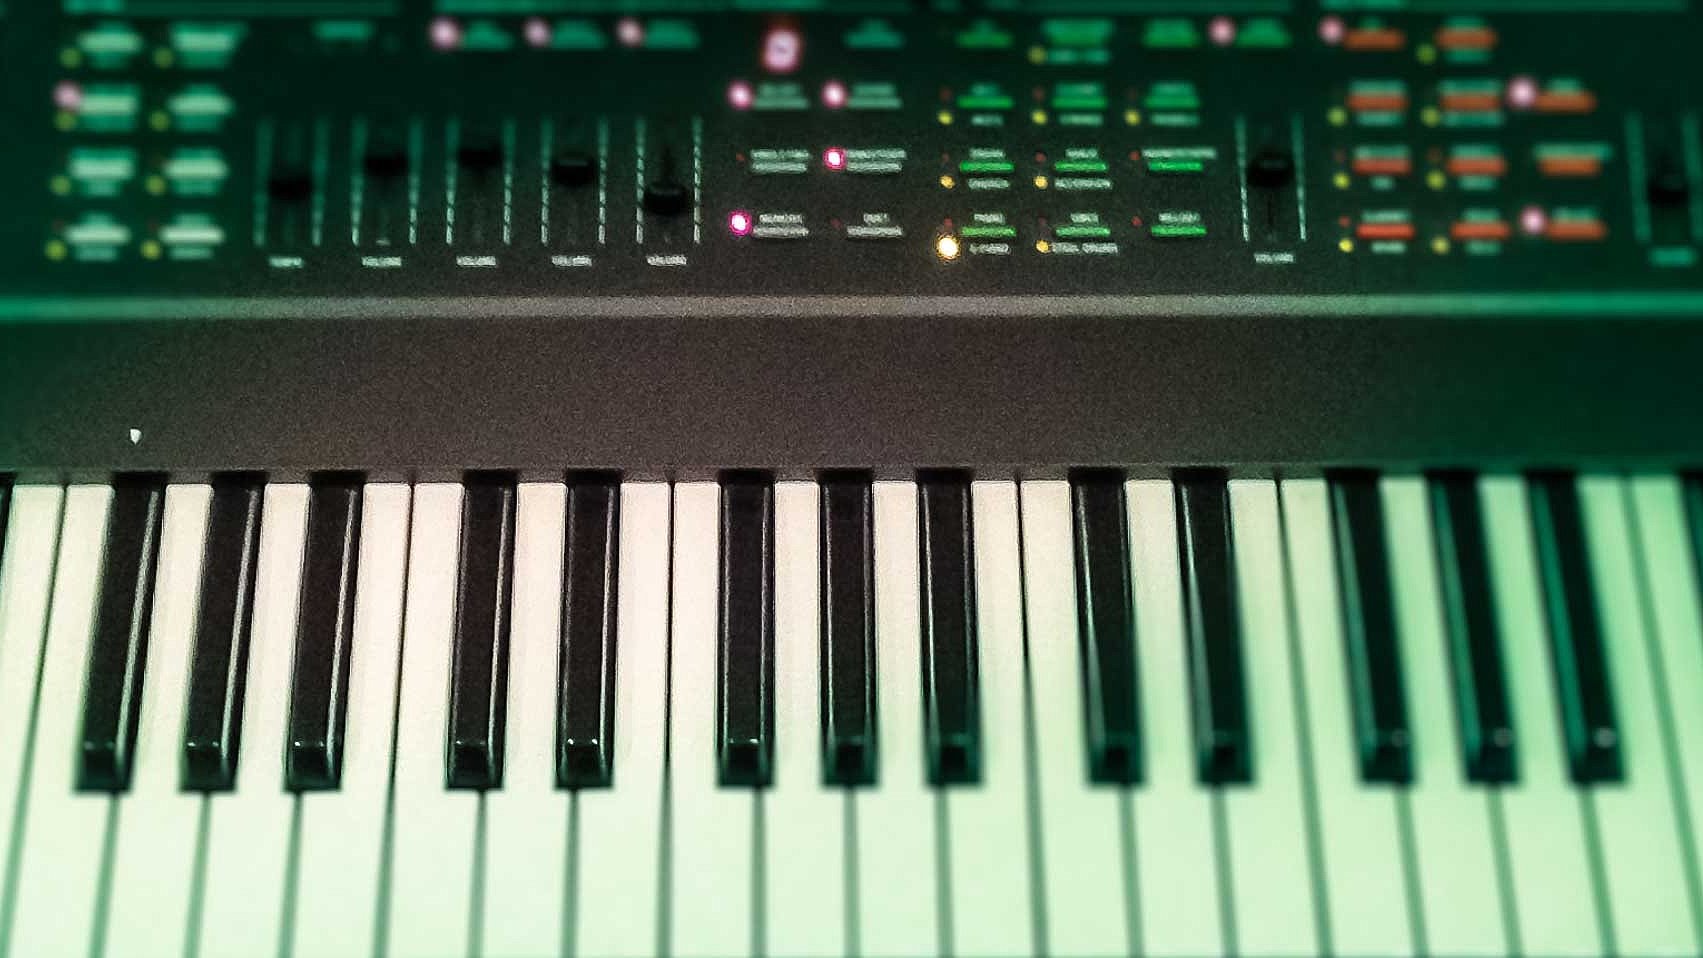 Klaviatur und Schaltfeld eines Keyboards